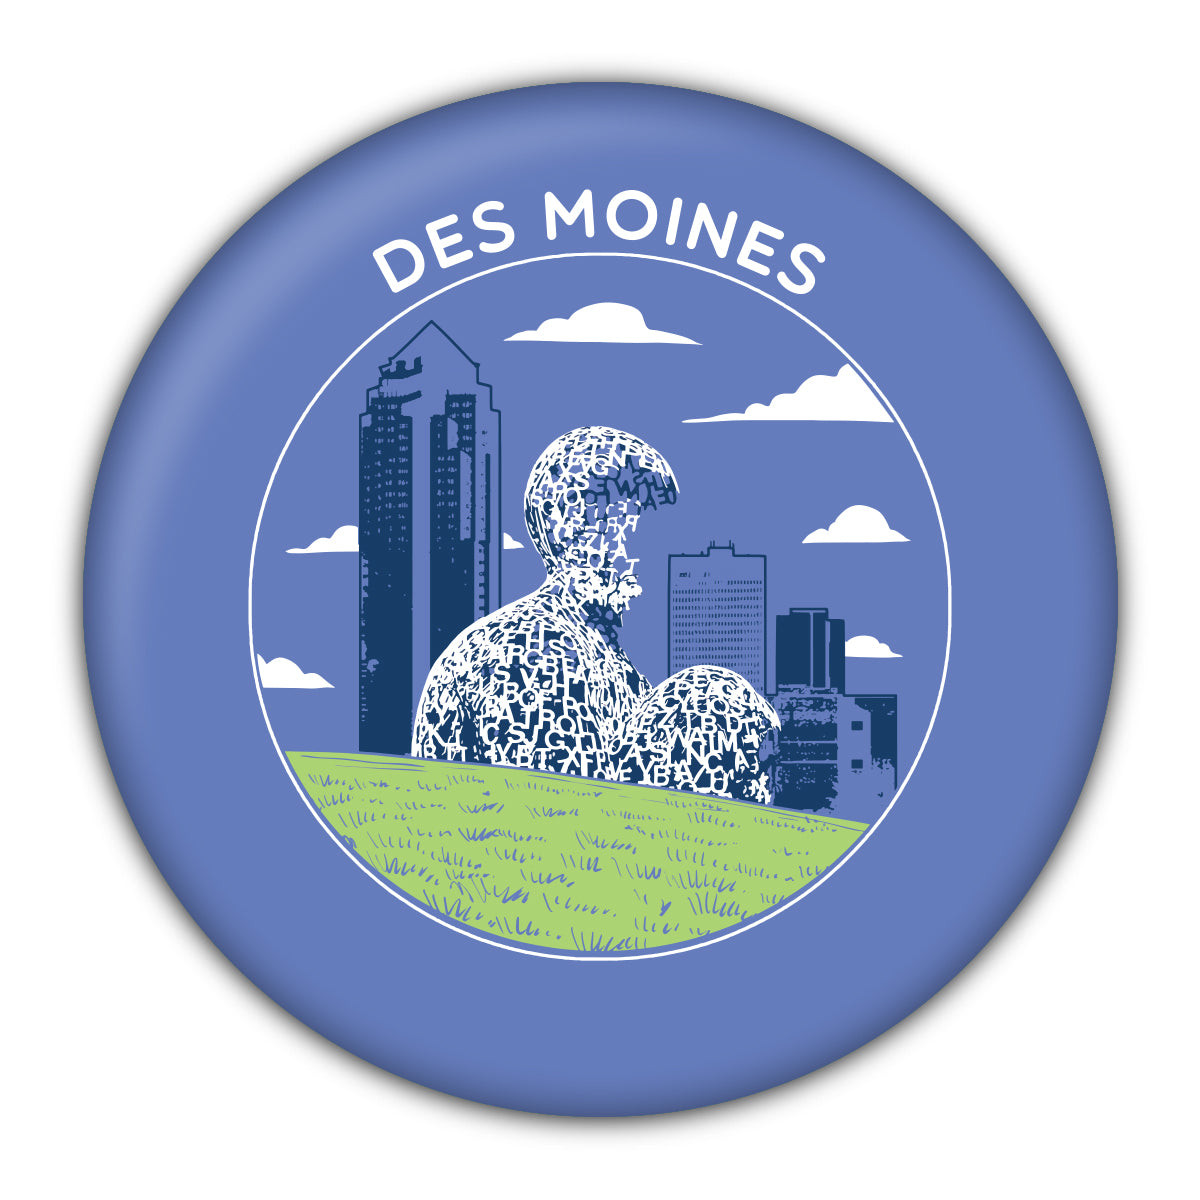 Des Moines Sculpture Park Coaster - Bozz Prints